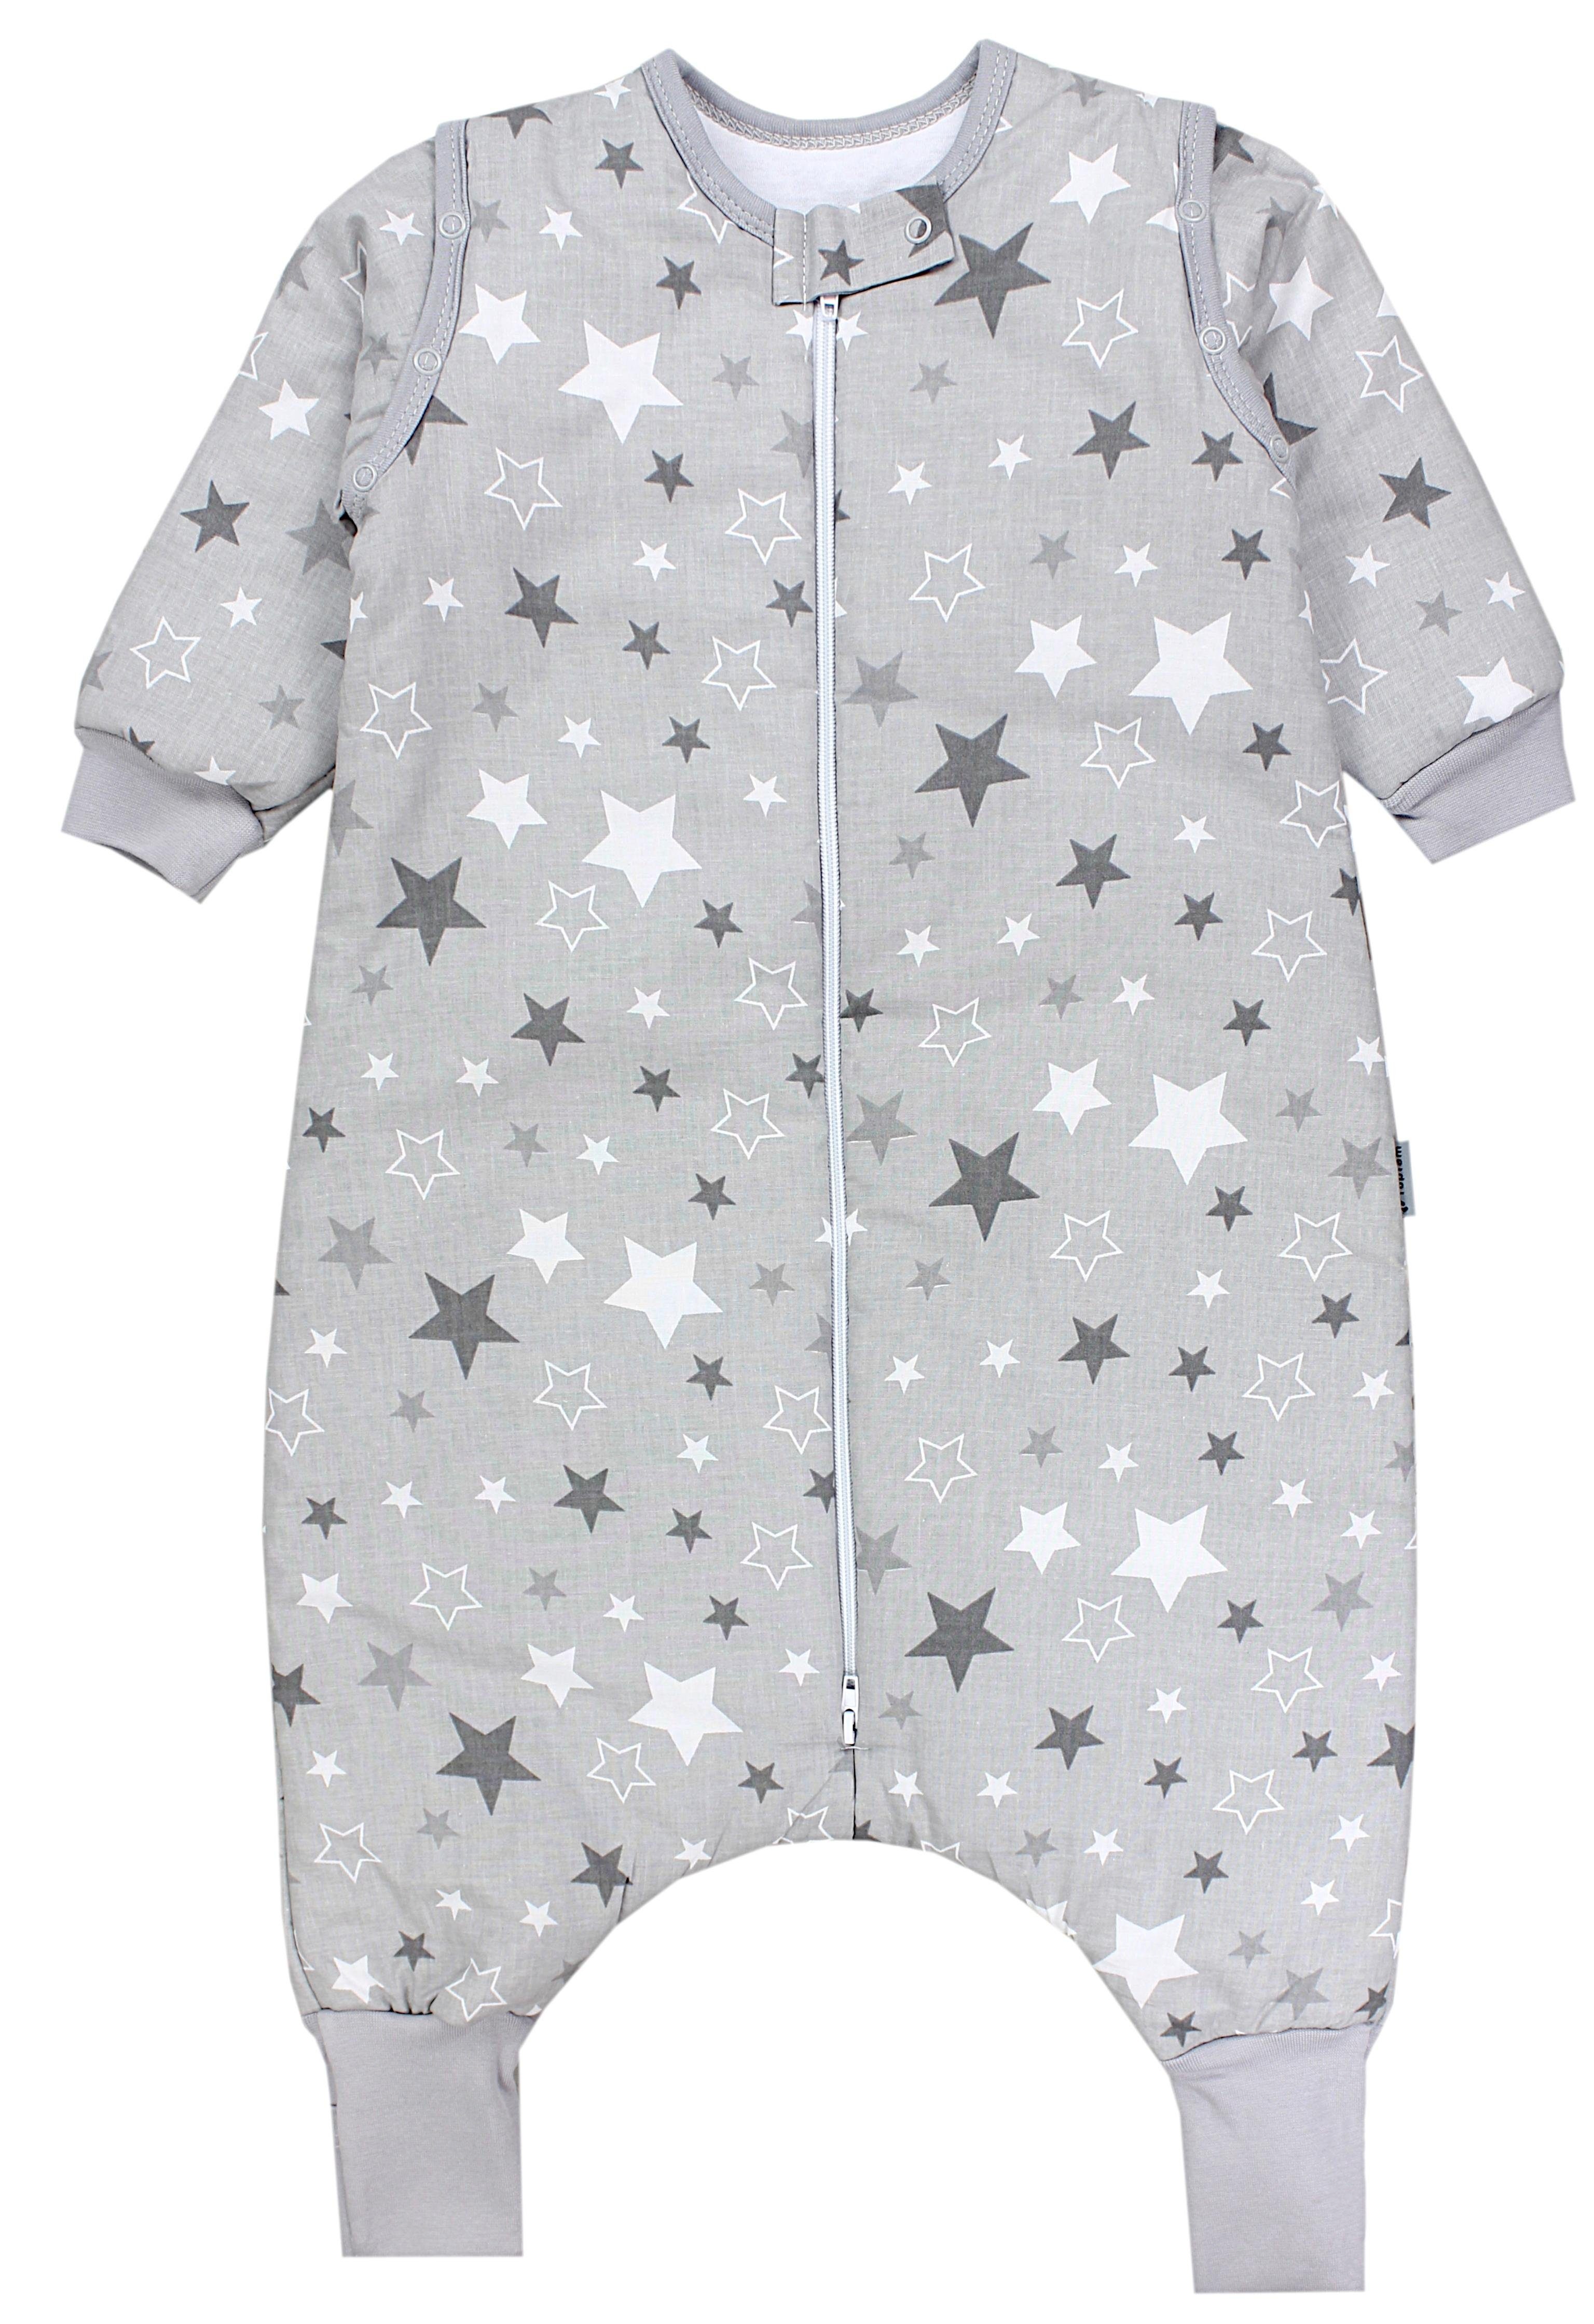 TupTam Babyschlafsack »TupTam Baby Schlafsack mit Armen Beinen Füßen  Winterschlafsack für Mädchen Jungen Babyschlafsack« online kaufen | OTTO